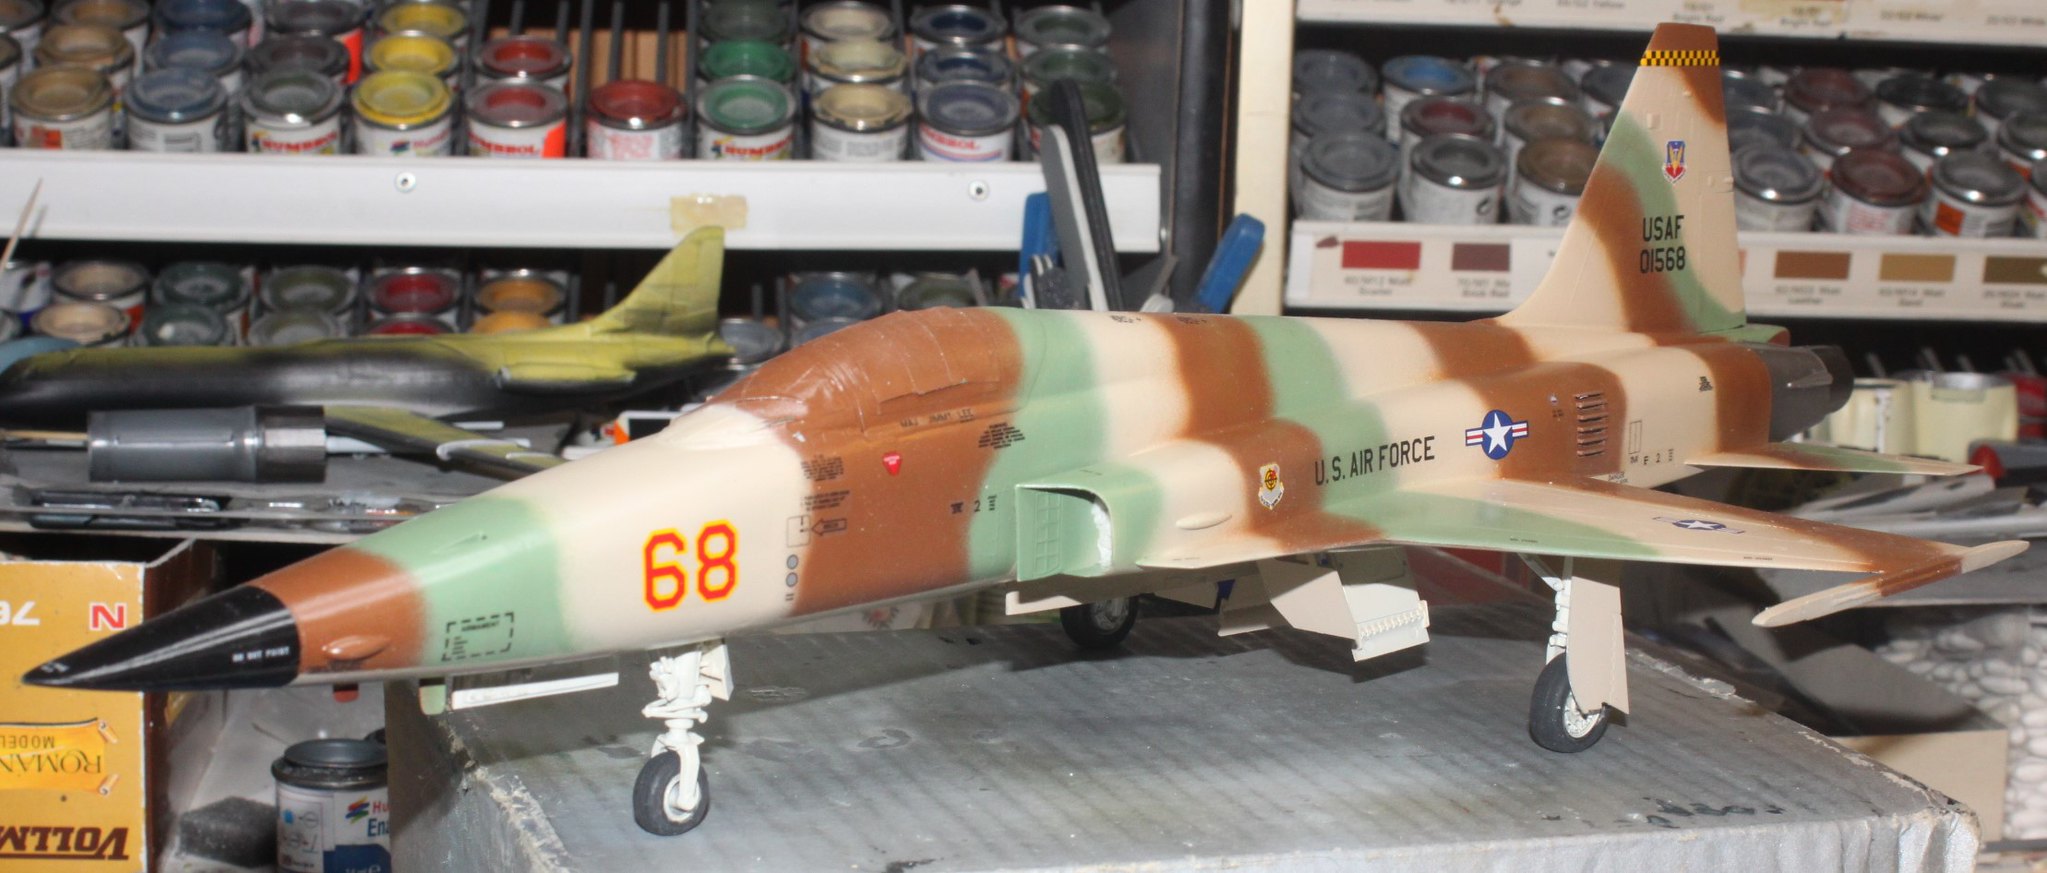 Northrop F-5E Tiger II, Revell (Hasegawa) 1/32 - Sida 4 50357102841_d3fb034b5a_k